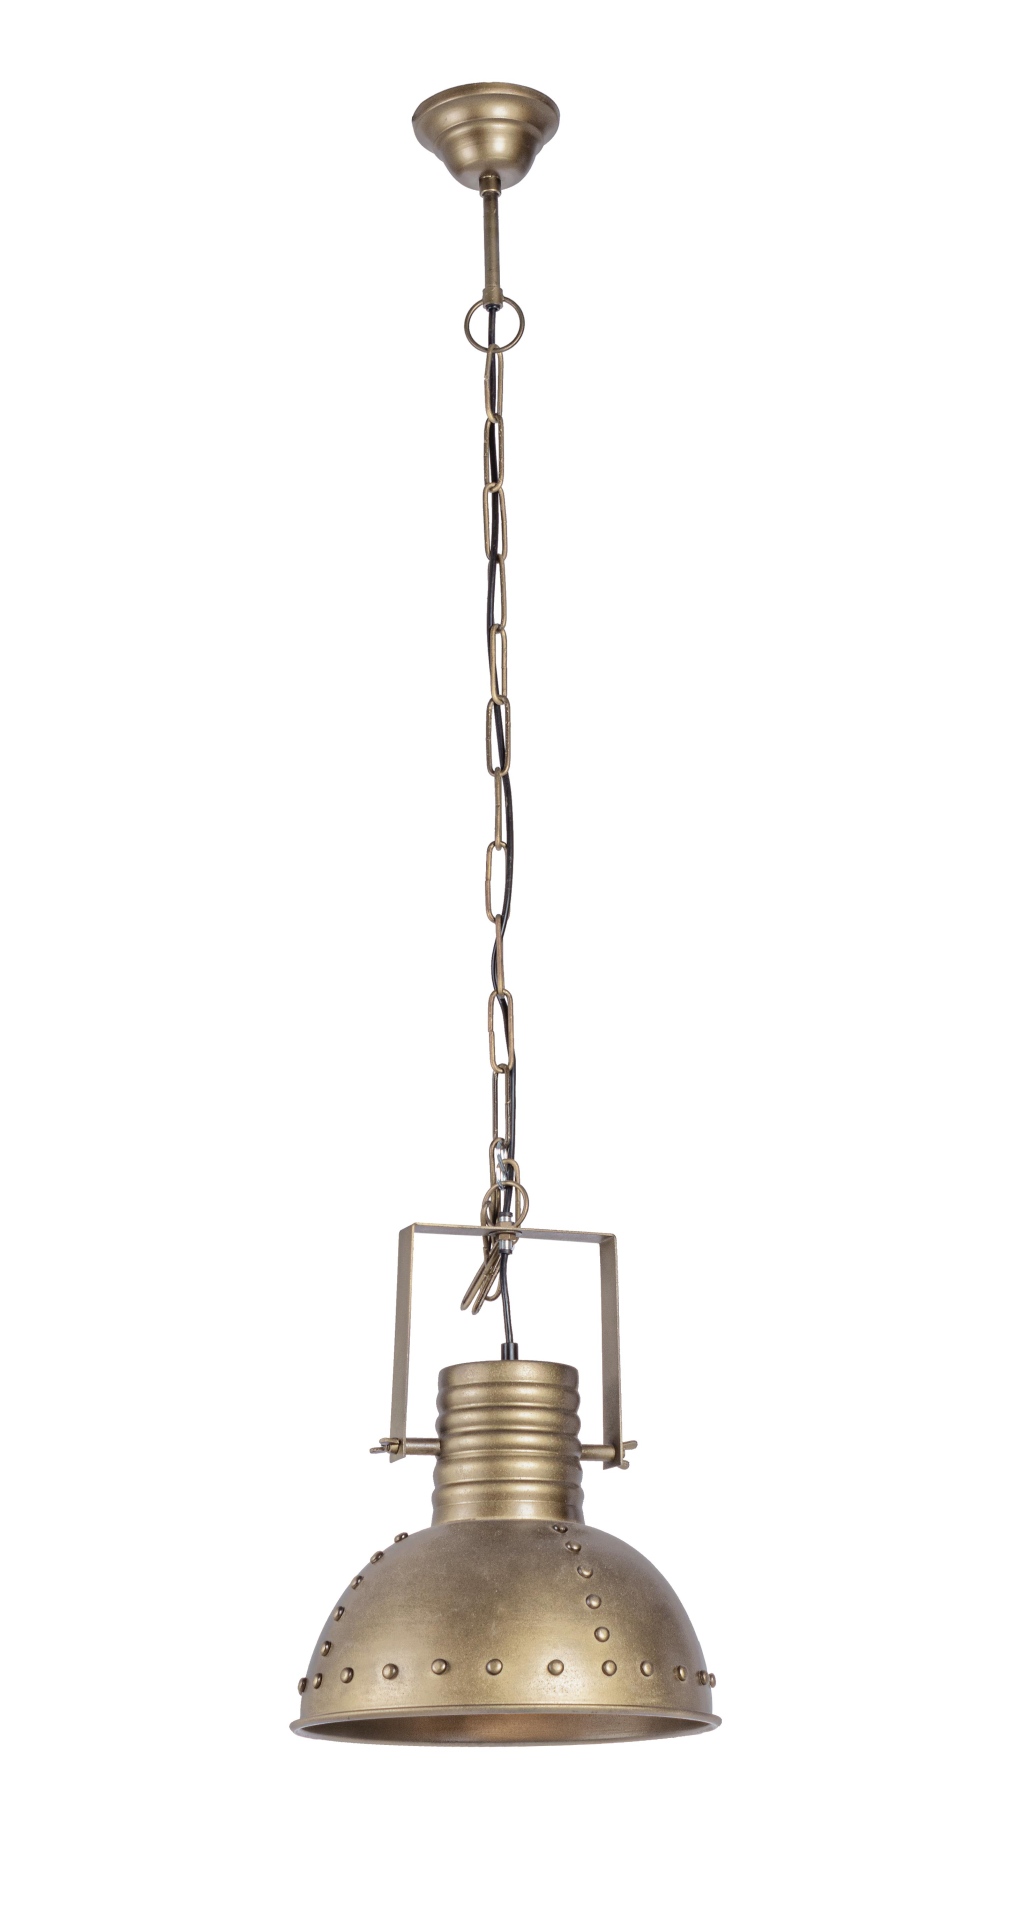 Die Hängeleuchte Arlington überzeugt mit ihrem industriellen Design. Gefertigt wurde sie aus Metall, welches einen goldenen Farbton besitzt. Die Lampenschirme sind auch aus Metall. Die Lampe besitzt eine Höhe von 168 cm.